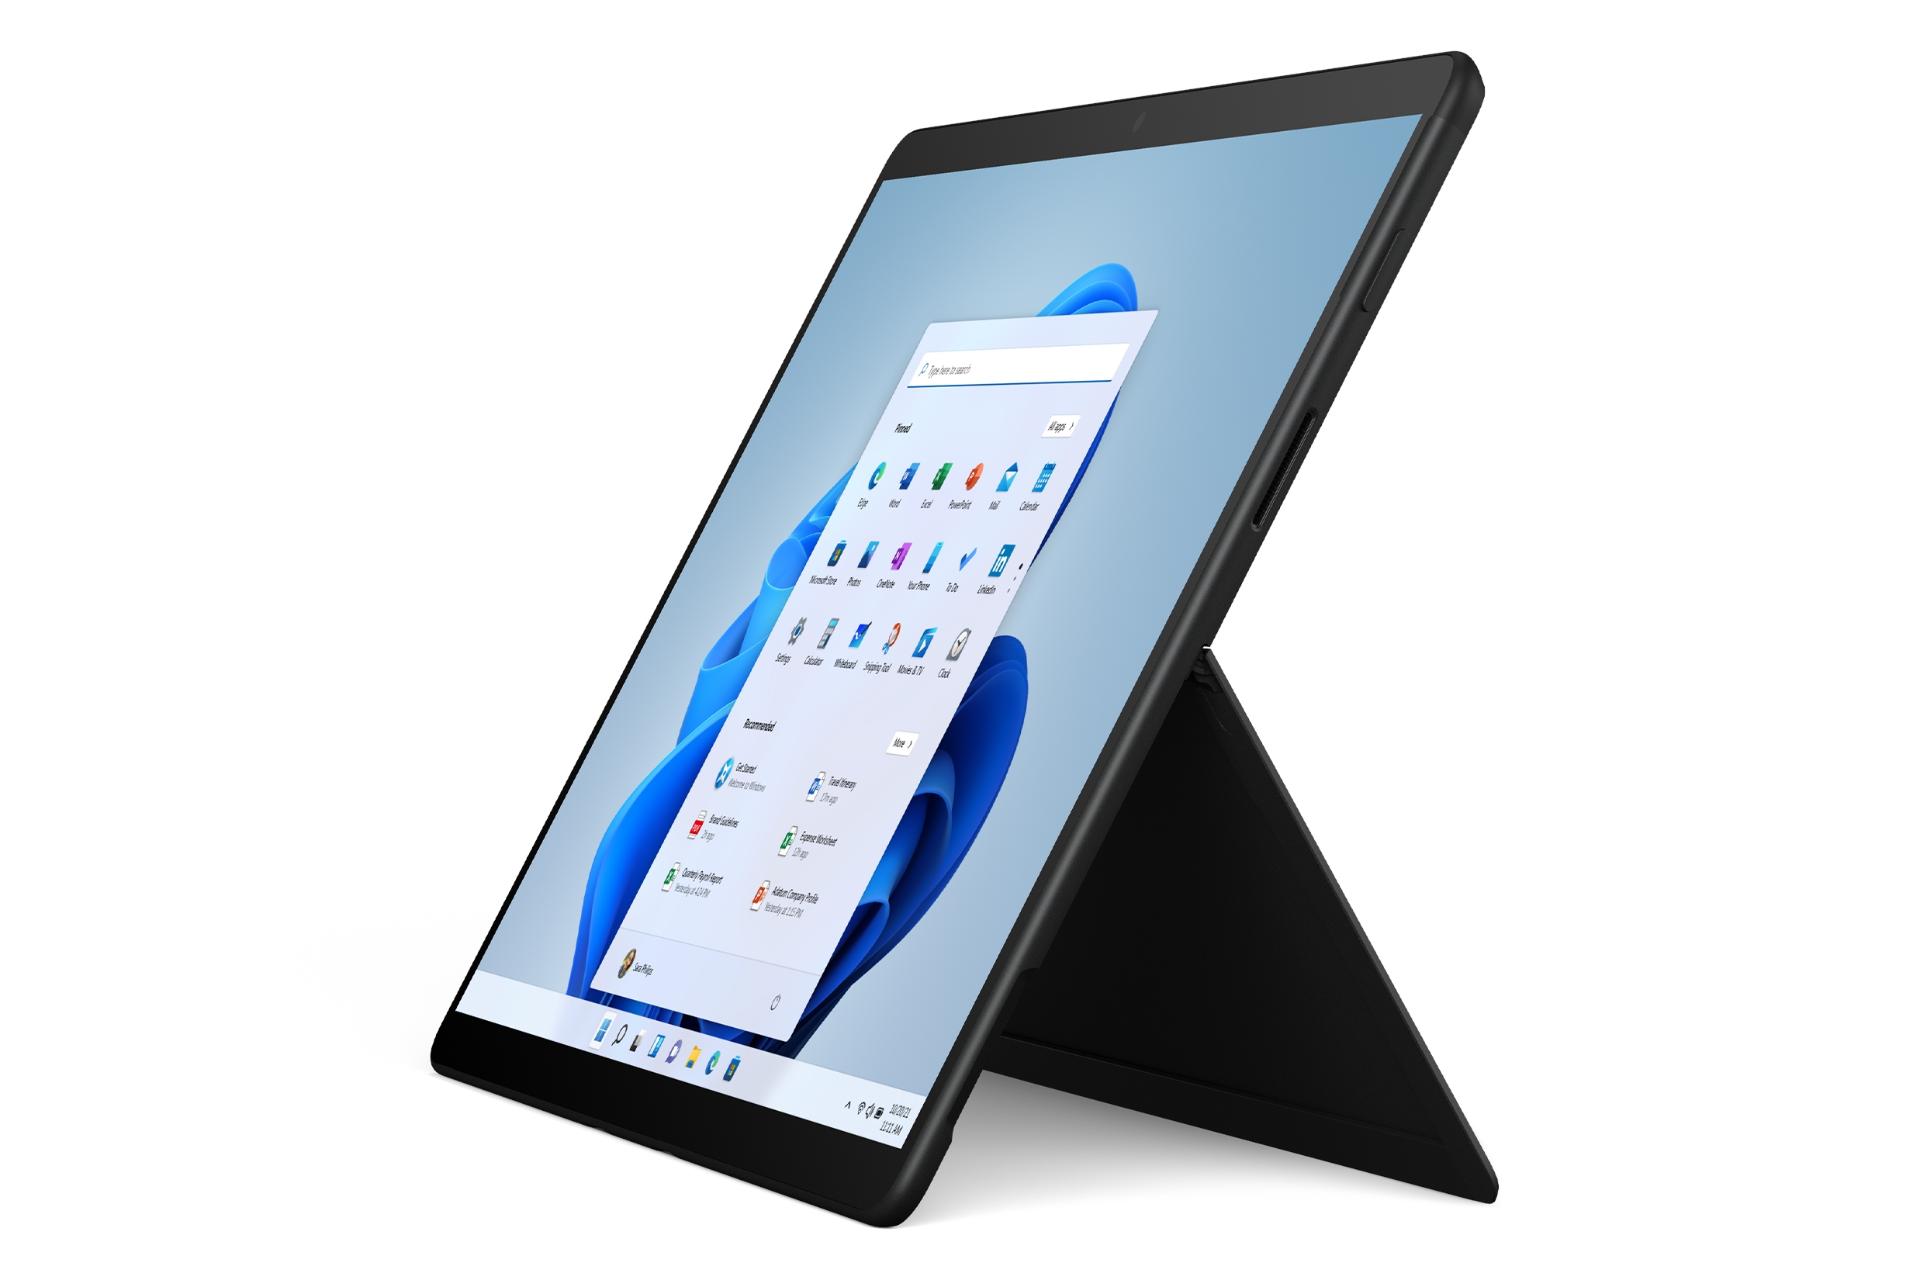 نمای جانبی سرفیس پرو ایکس مایکروسافت / Microsoft Surface Pro X مشکی